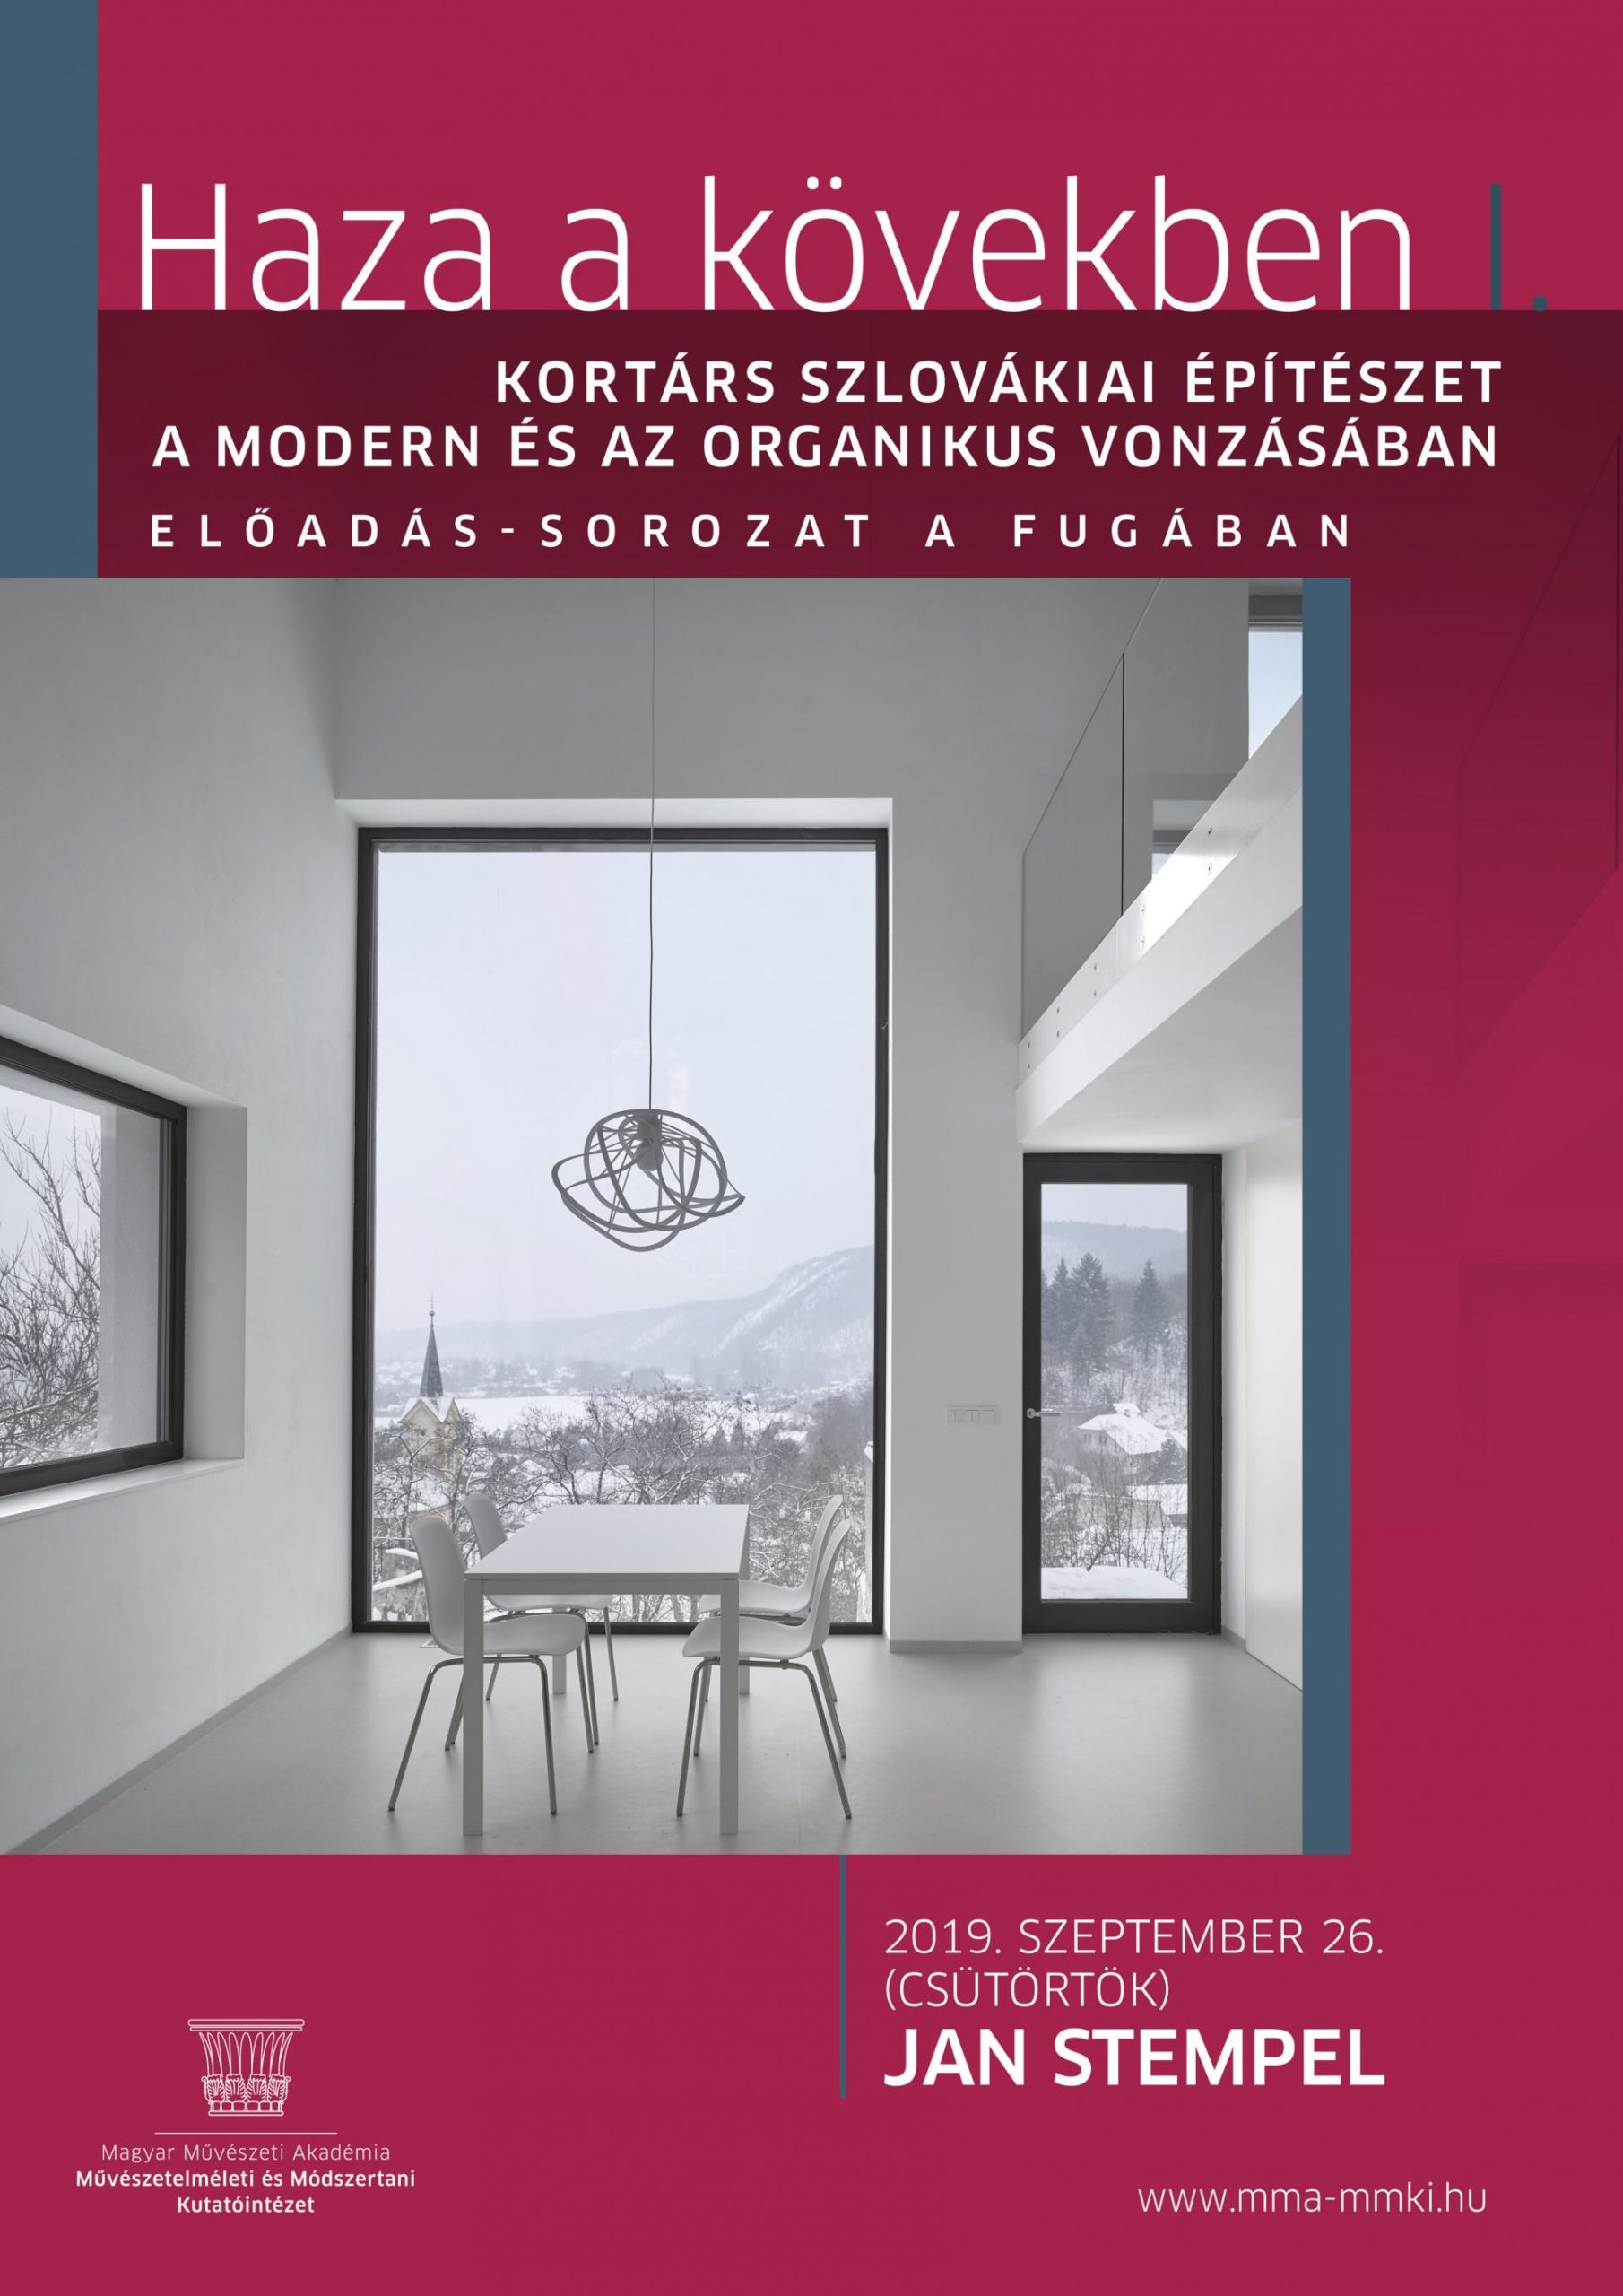 Haza a kövekben I. Kortárs szlovákiai építészet a modern és az organikus vonzásában – 2019. szeptember 26. 18.30 FUGA